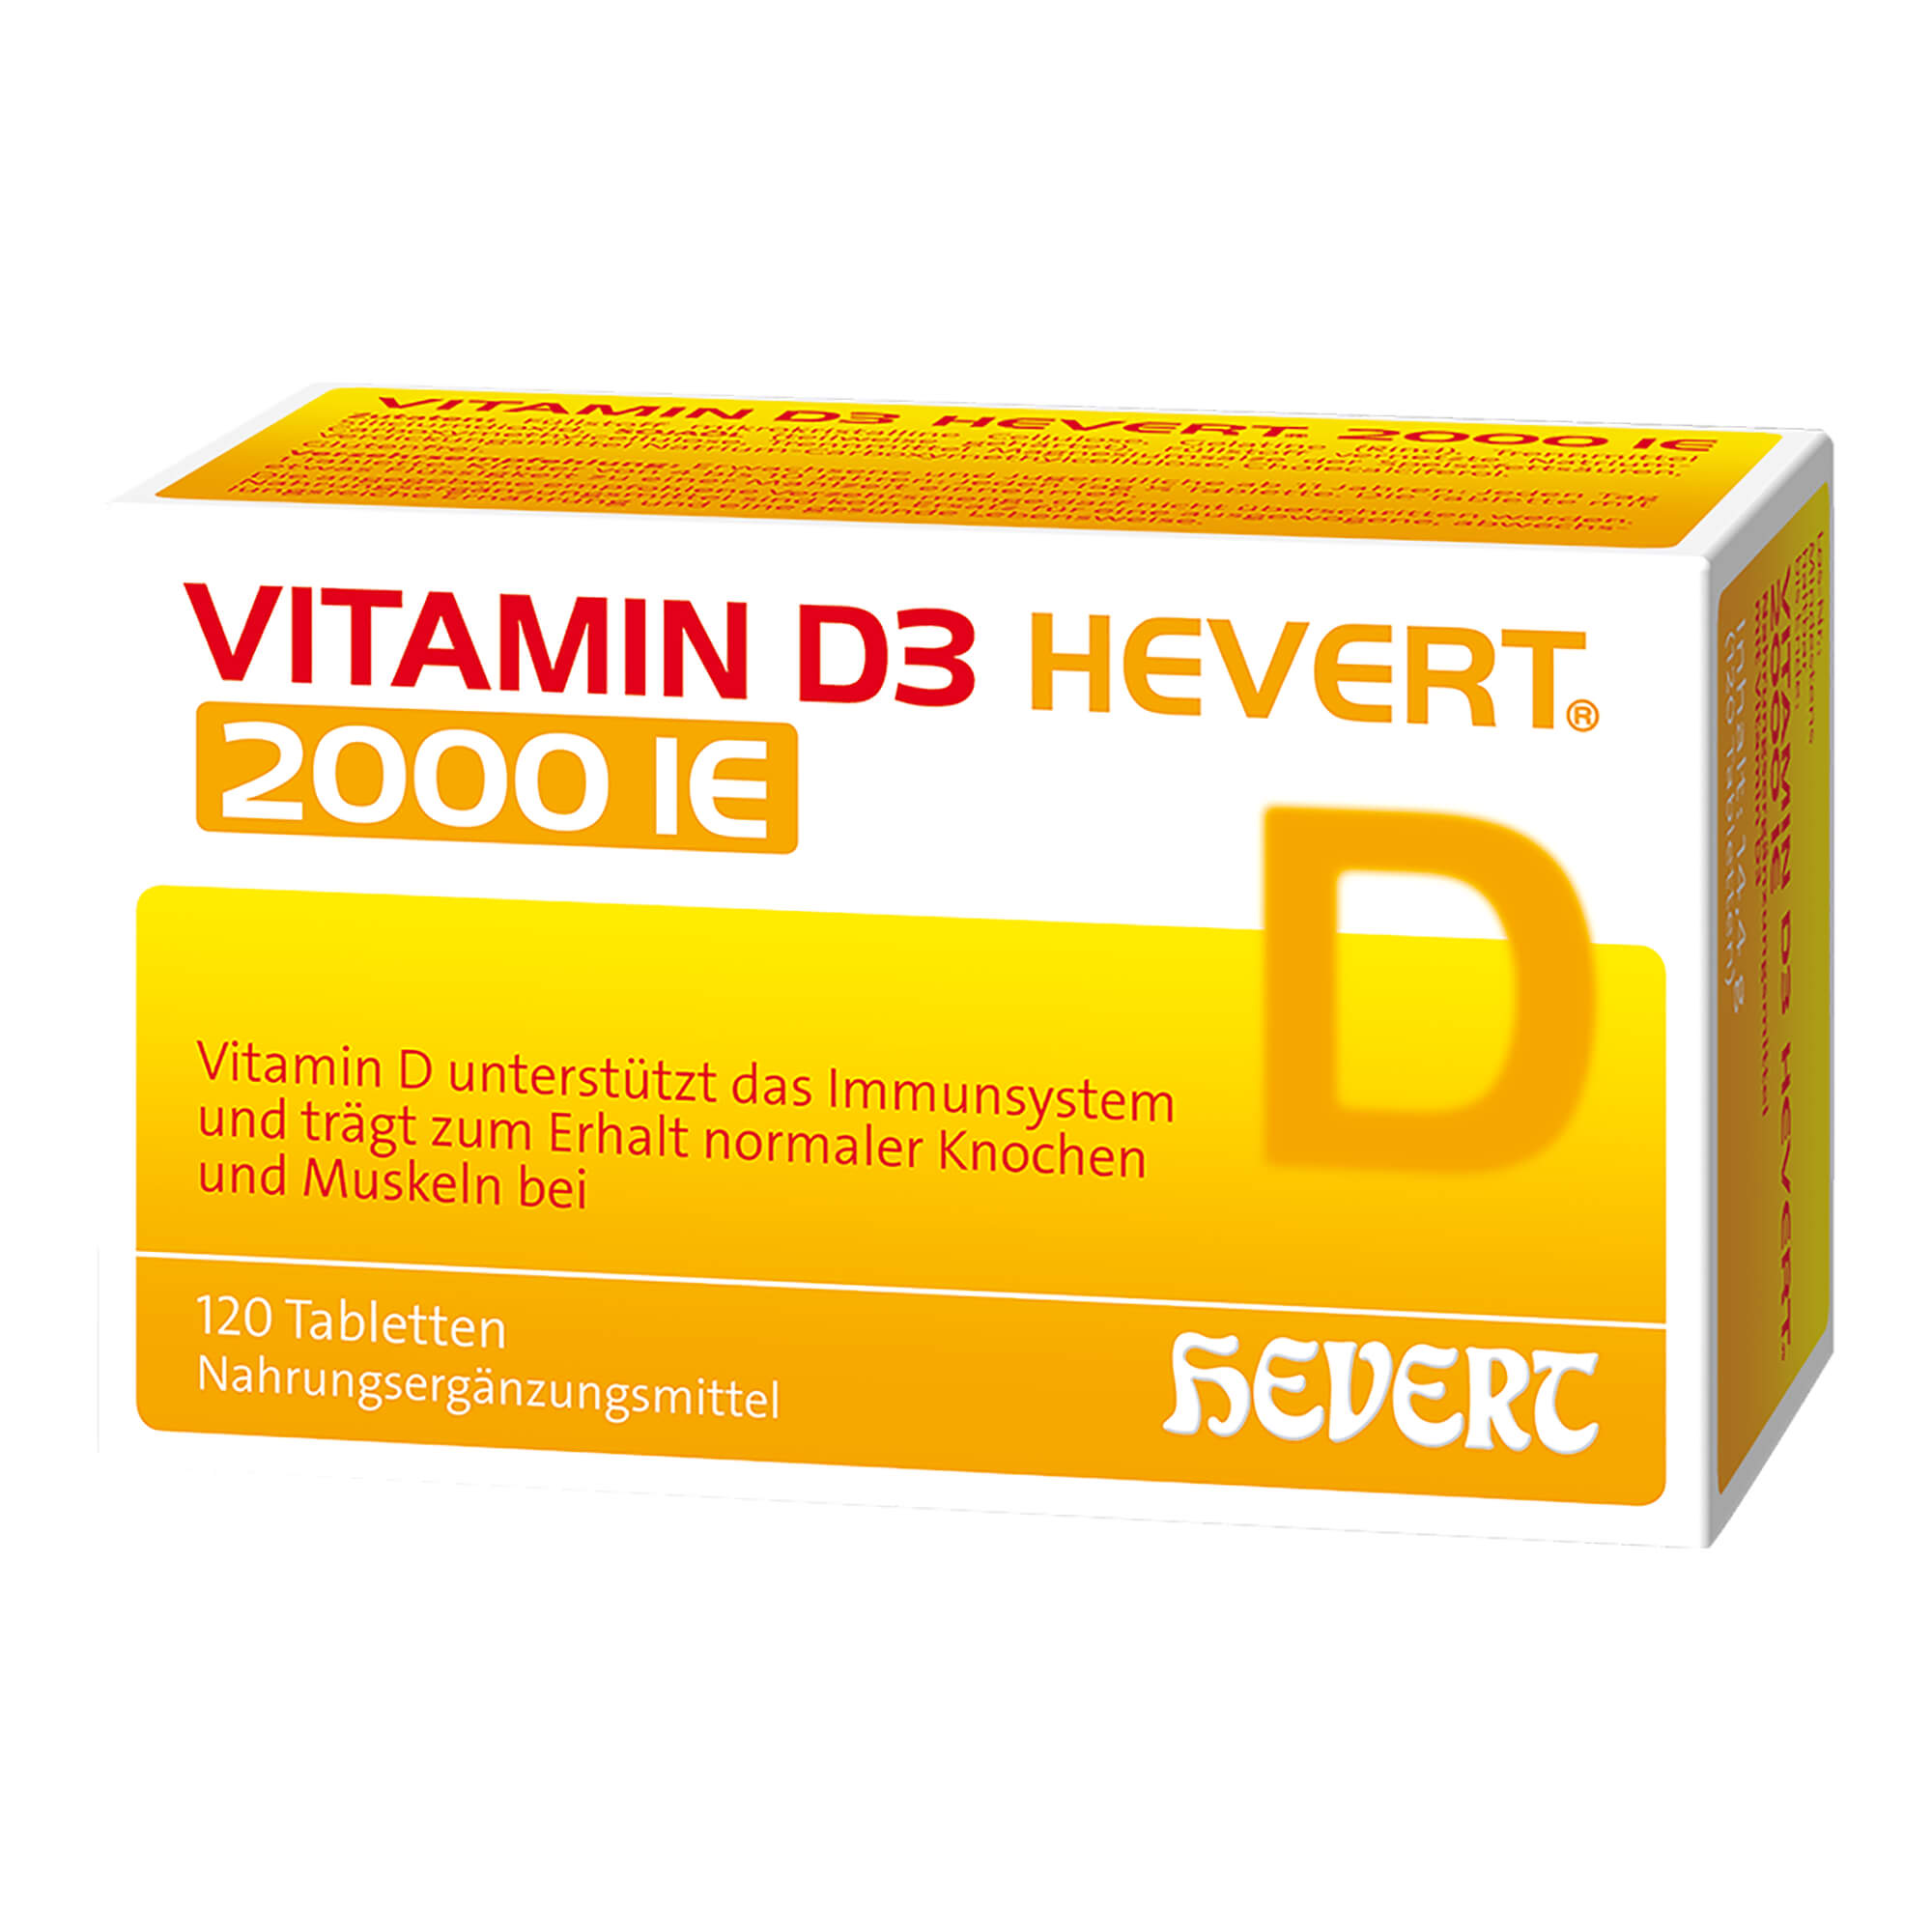 Zur Vorbeugung und Behandlung eines Vitamin D3 Mangels.